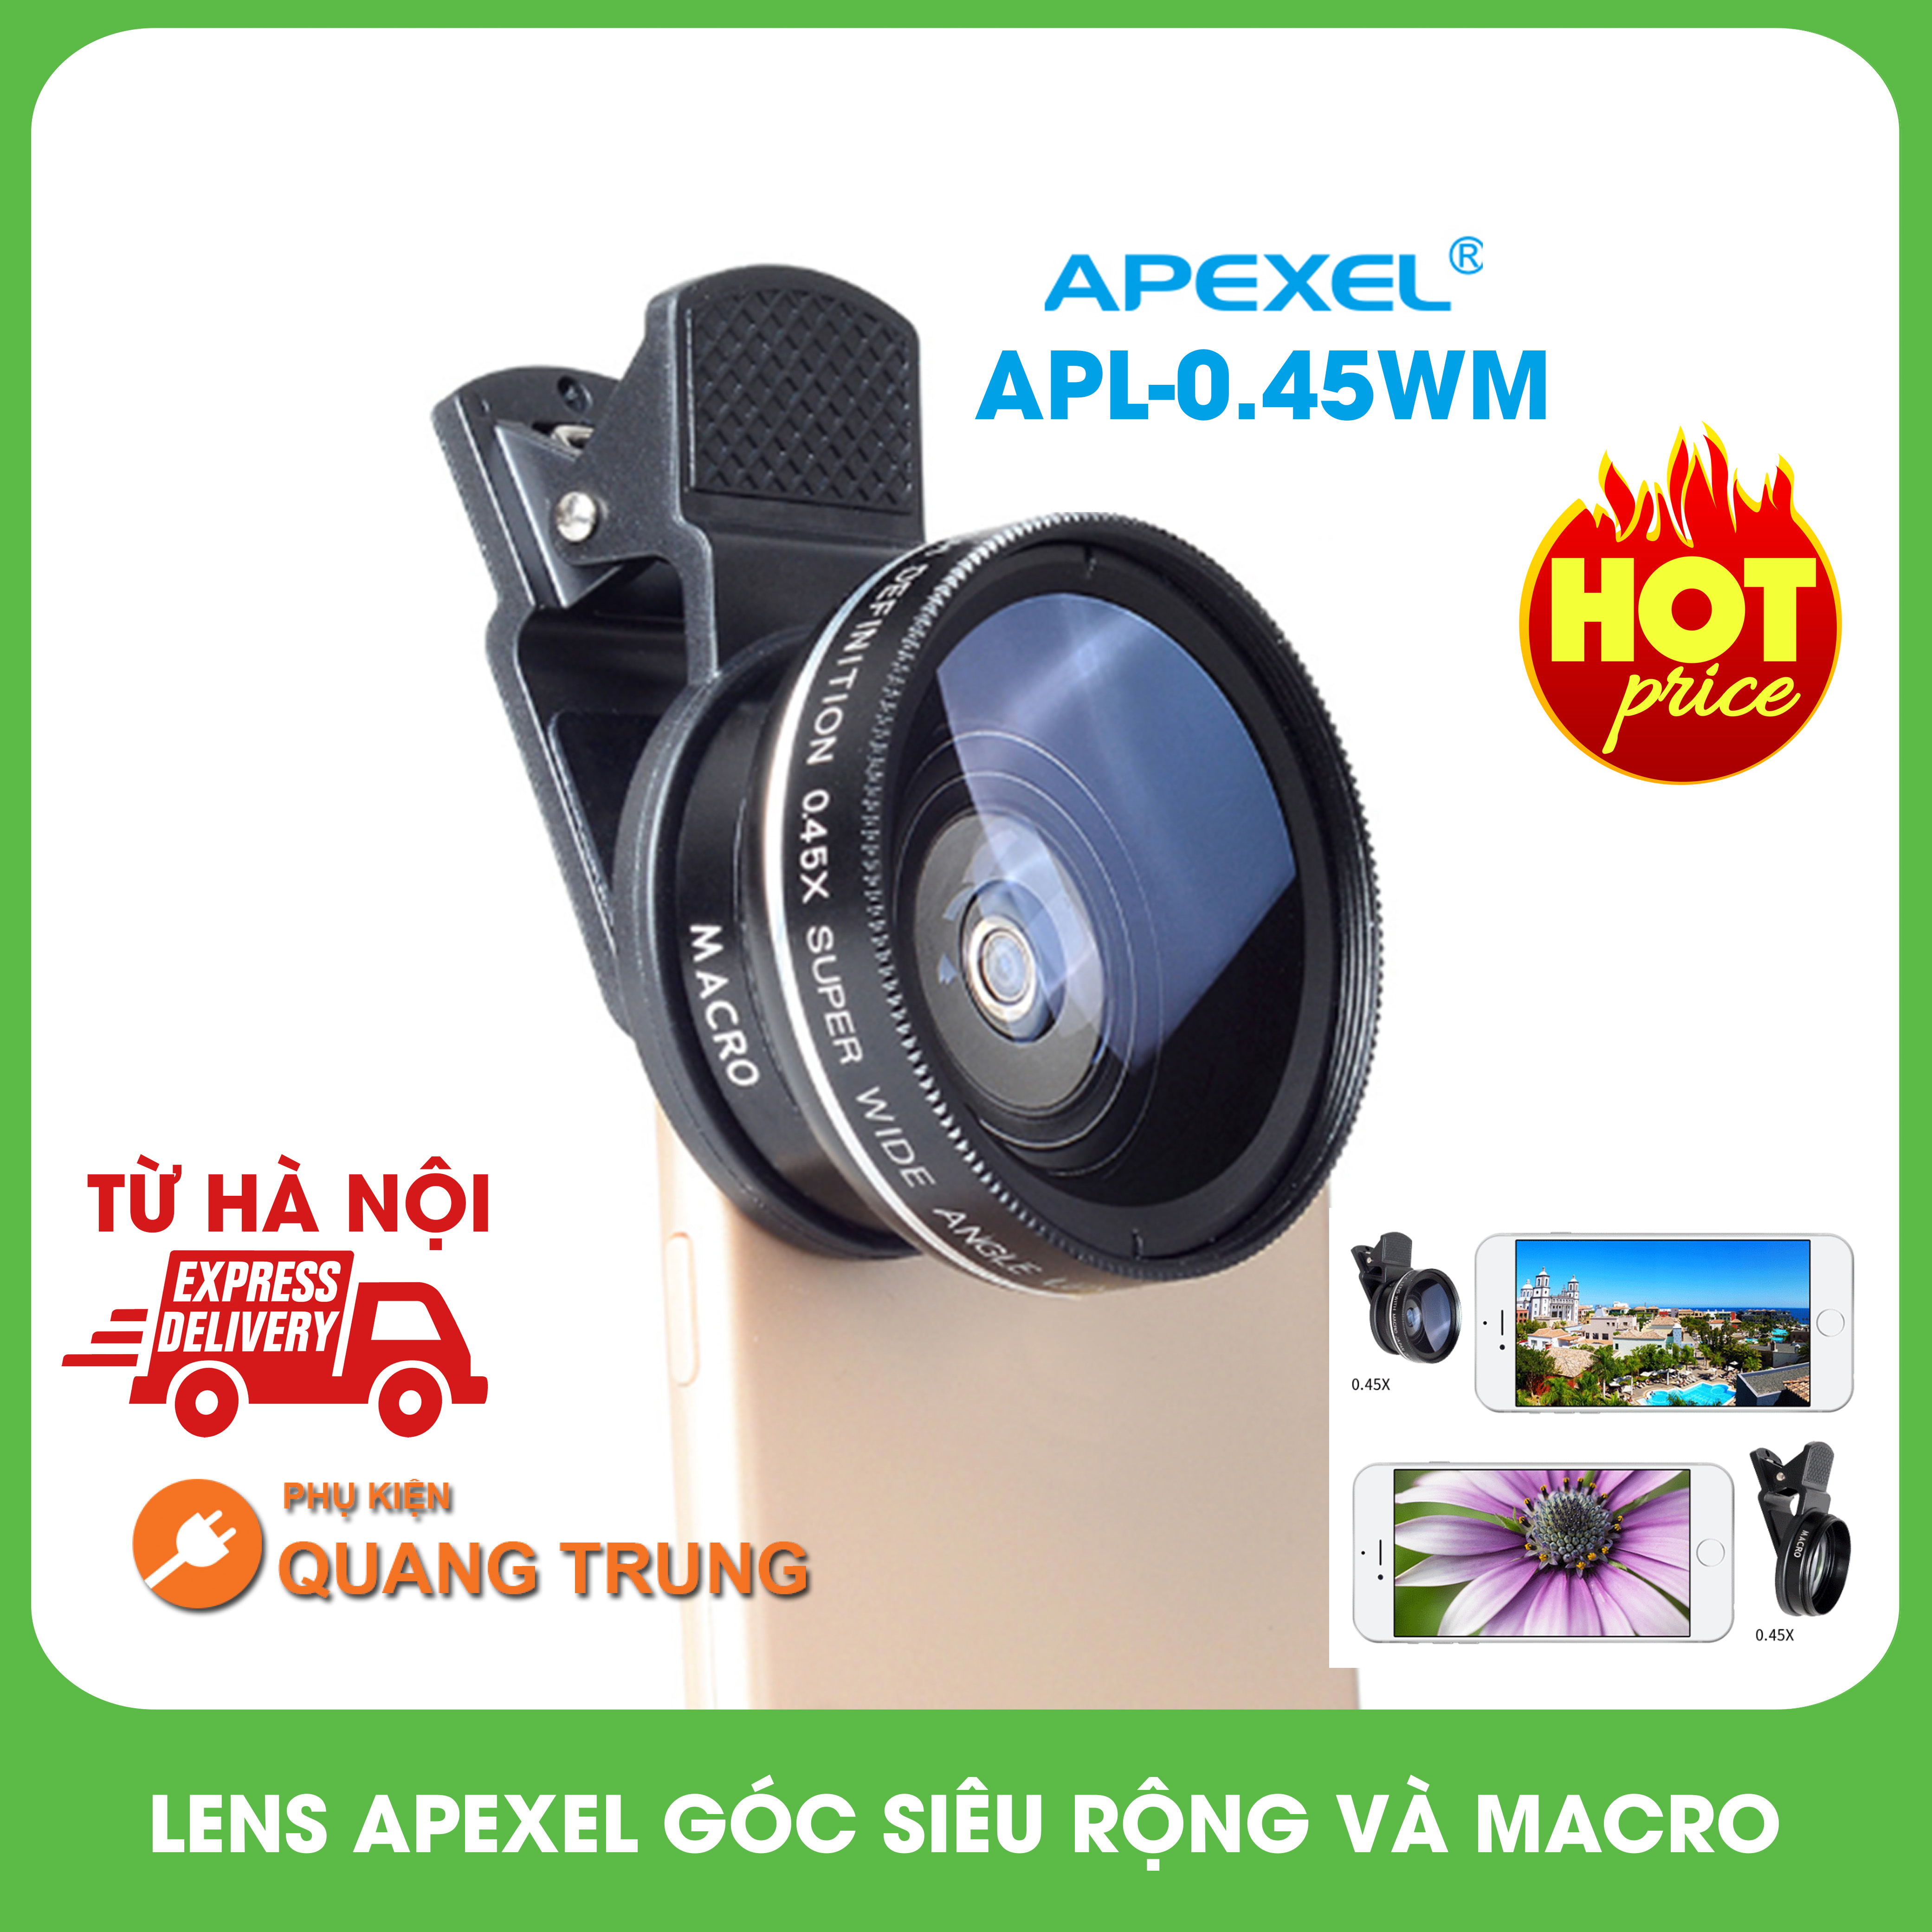 Bộ ống kính,lens apexel chụp ảnh cho điện thoại 2 in 1, góc rộng và macro